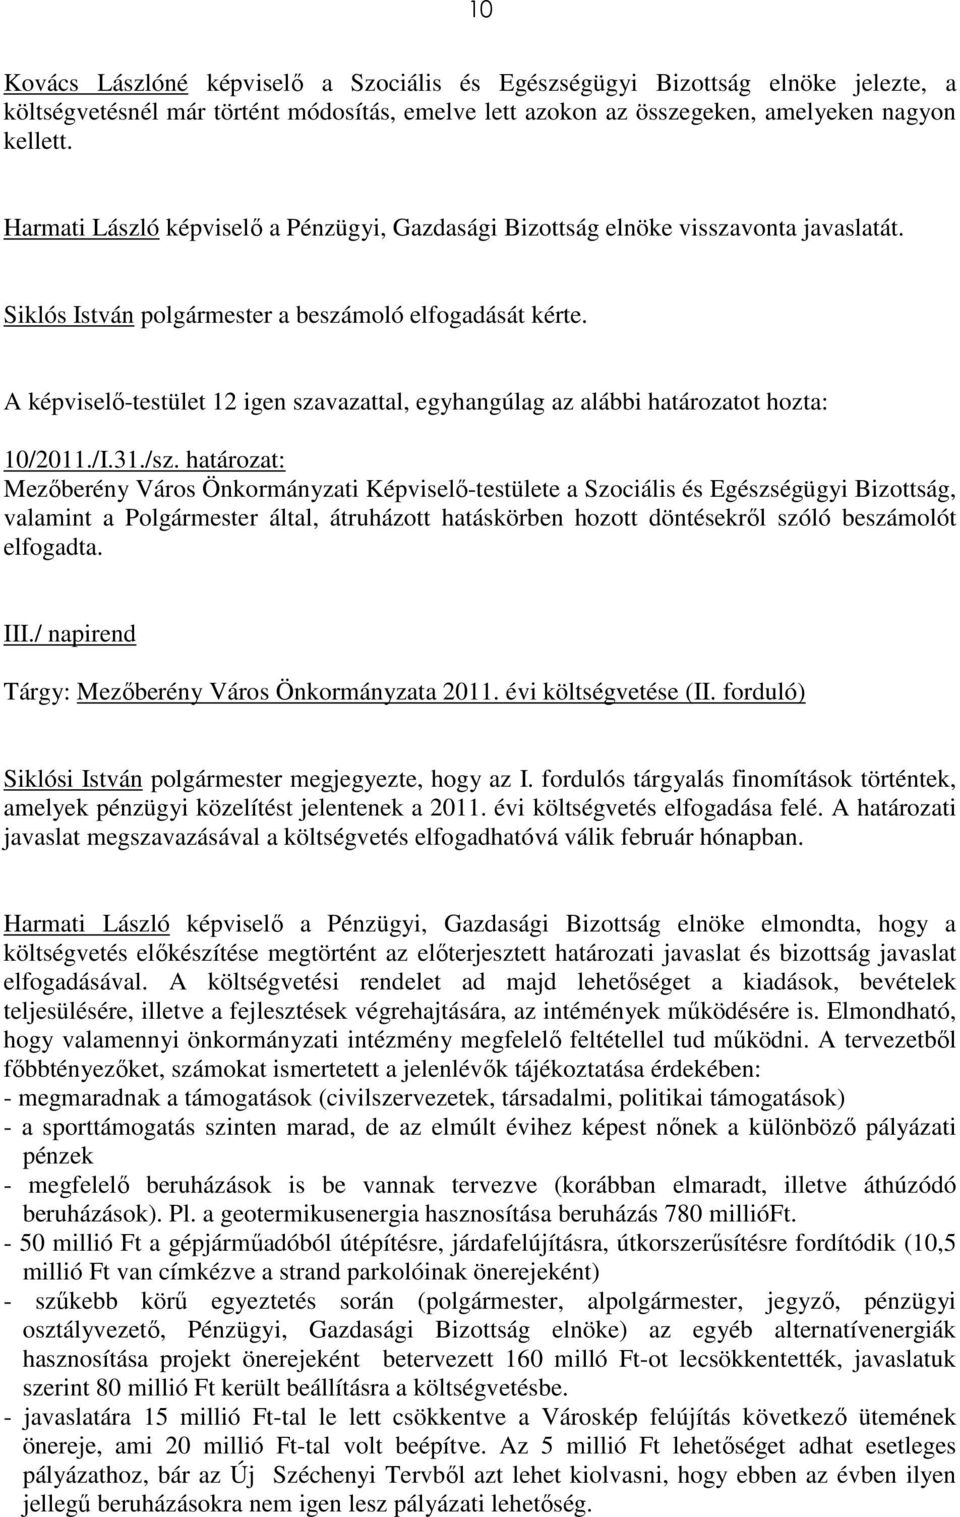 határozat: Mezıberény Város Önkormányzati Képviselı-testülete a Szociális és Egészségügyi Bizottság, valamint a Polgármester által, átruházott hatáskörben hozott döntésekrıl szóló beszámolót